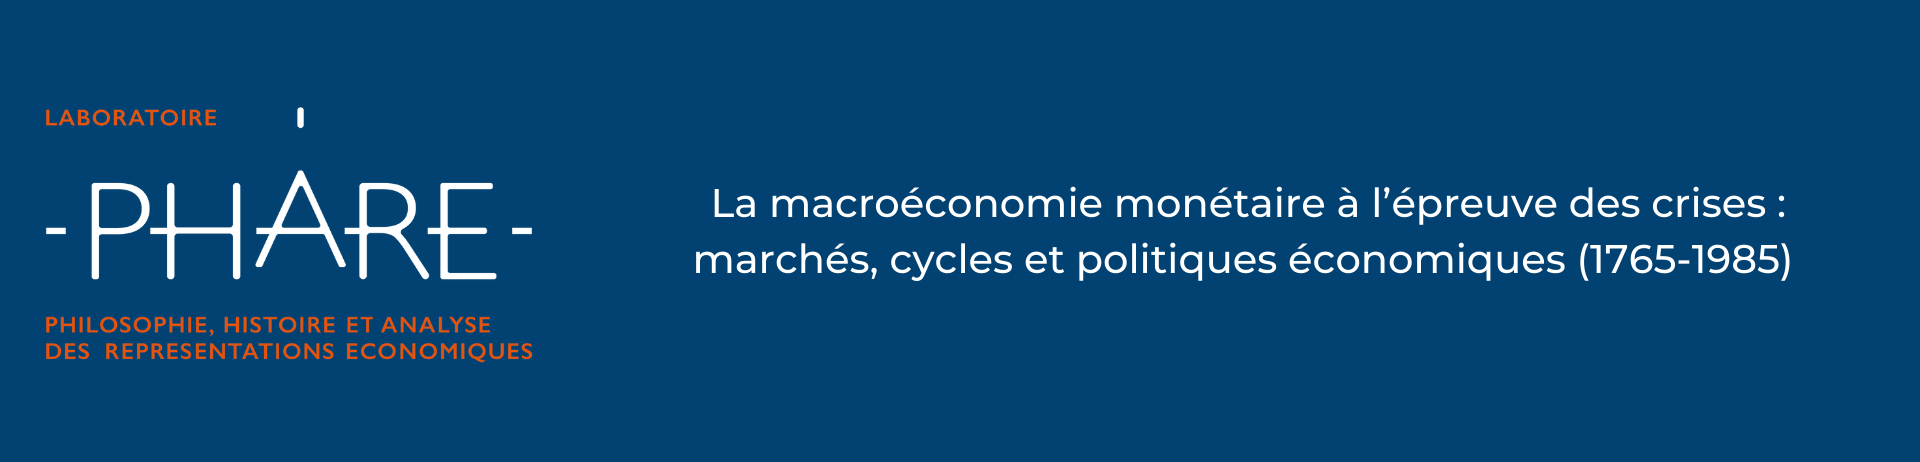 Phare - La macroéconomie monétaire à l’épreuve des crises: marchés, cycles et politiques économiques (1765-1985) 